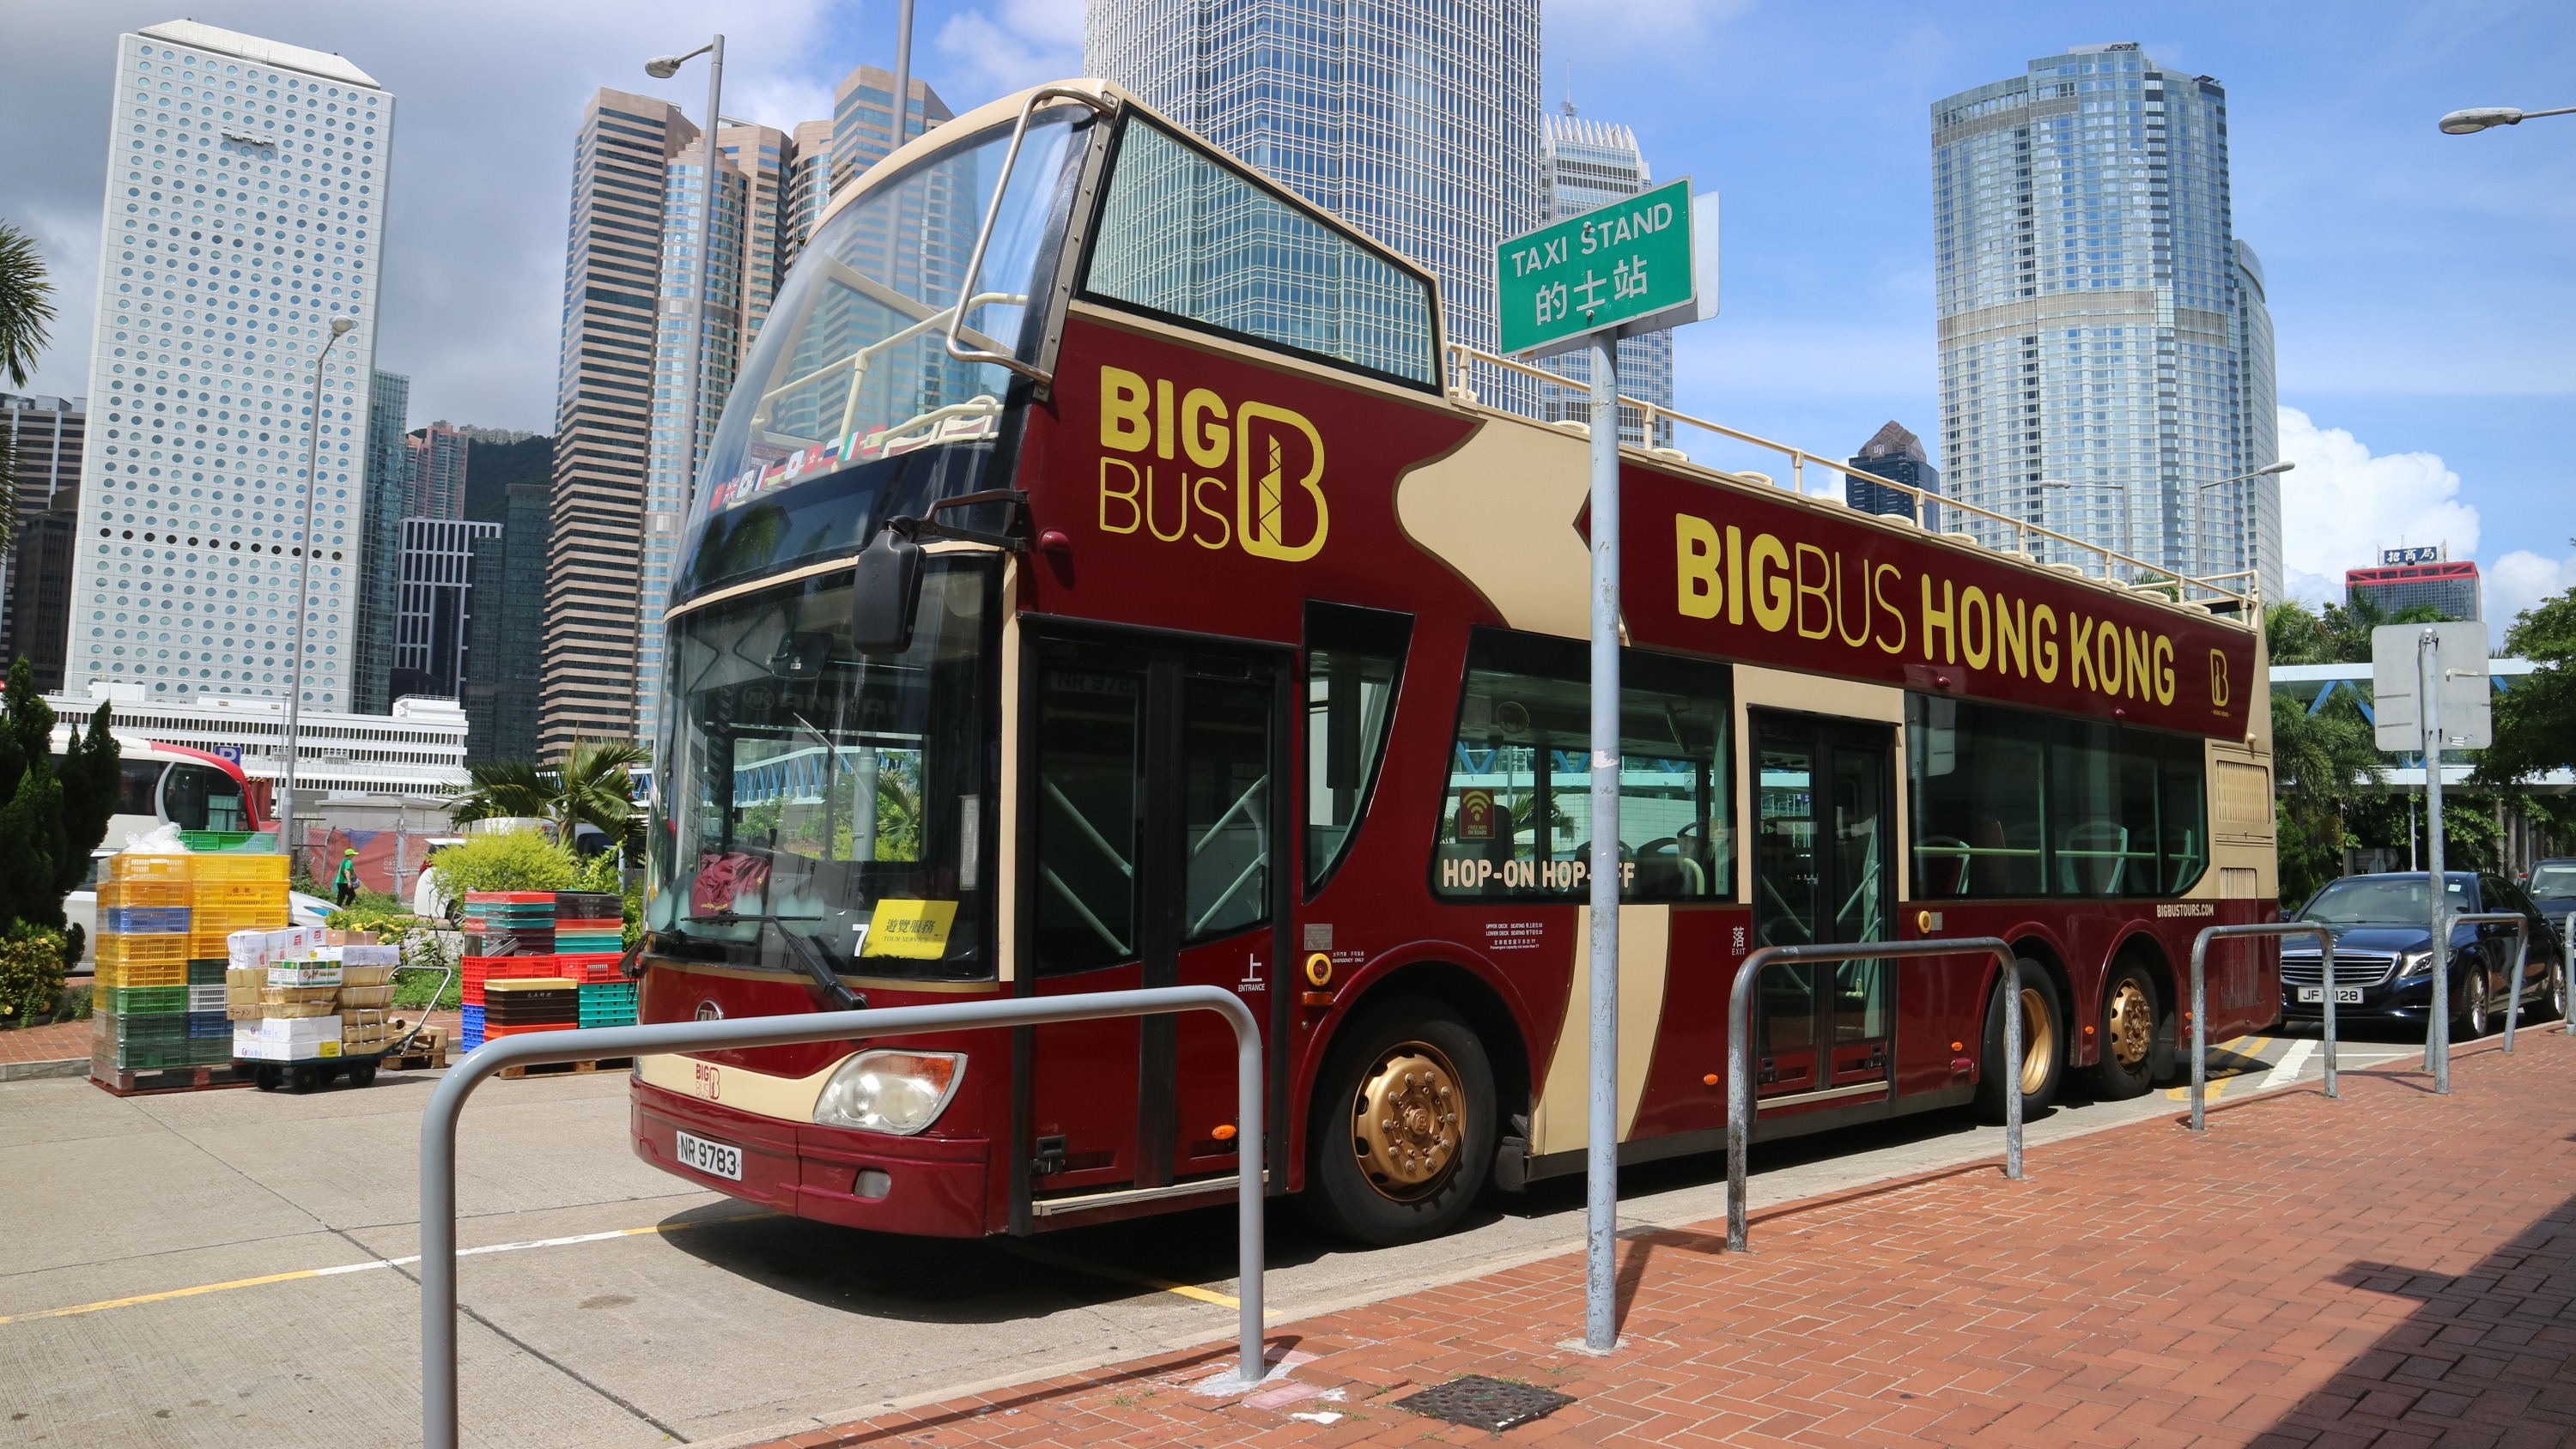 hong kong bus tours open top